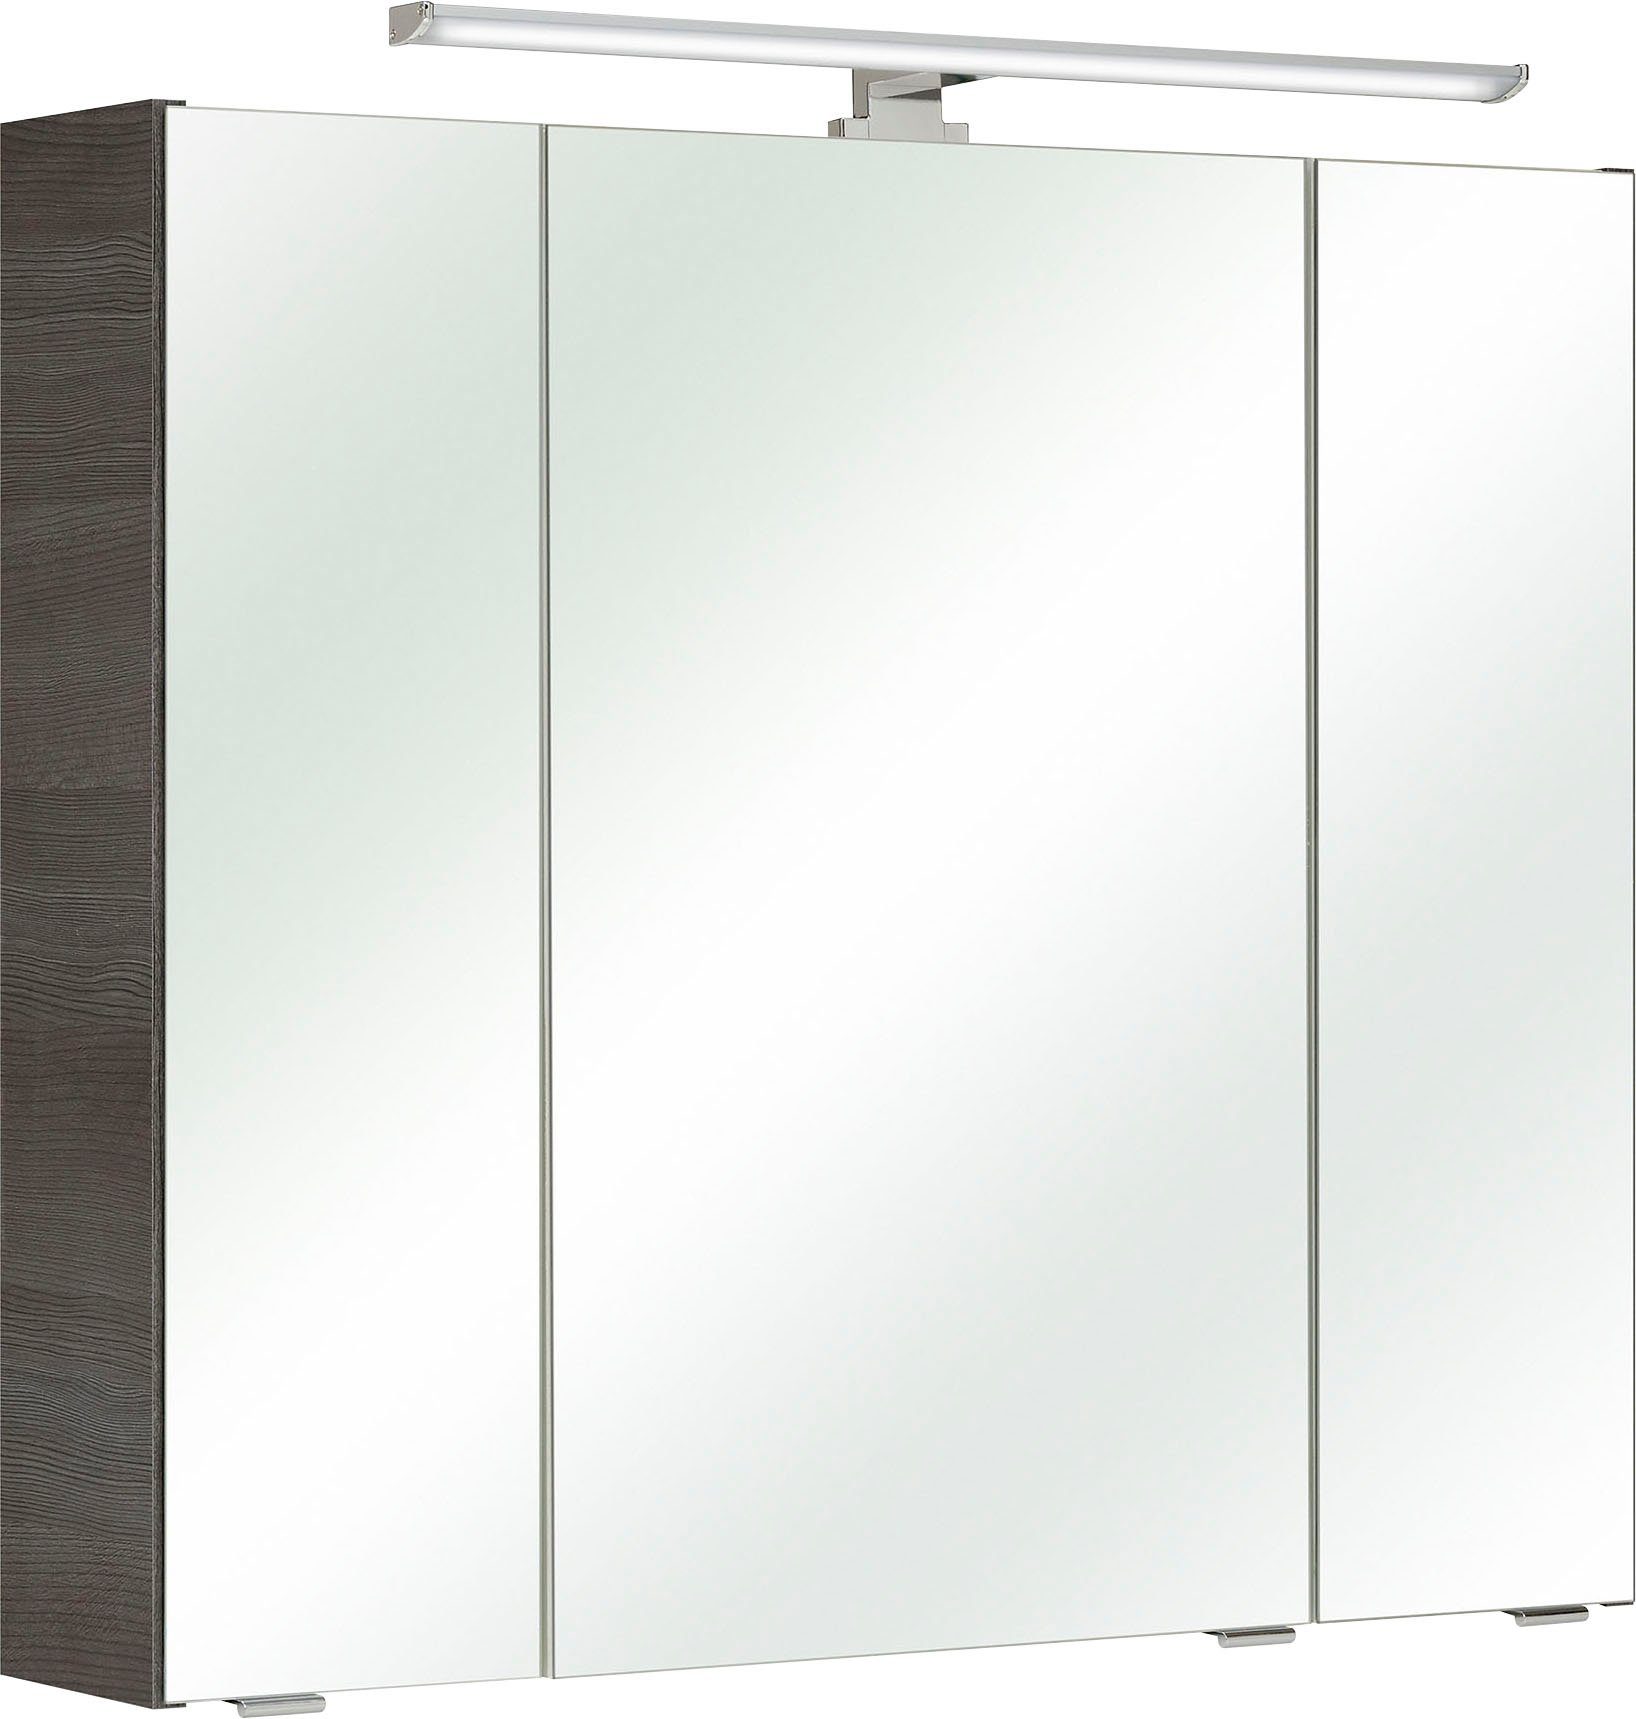 PELIPAL Spiegelkast Quickset Breedte 80 cm, 3-deurs, ledverlichting, schakelaar-/stekkerdoos, deurdemper